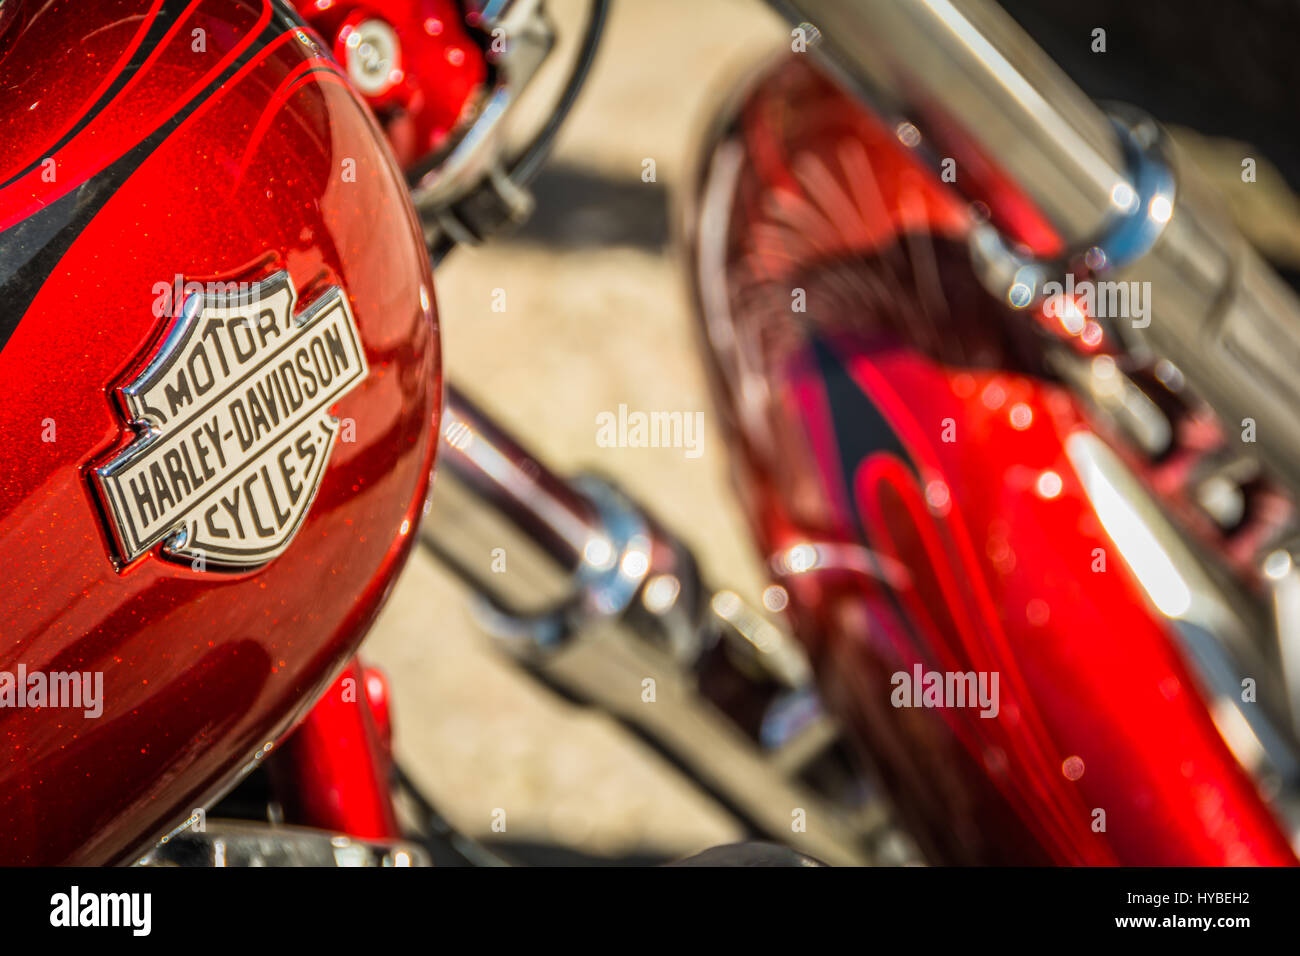 Ein roter Harley Davidson Motorrad in Hanover Square, London, UK Stockfoto